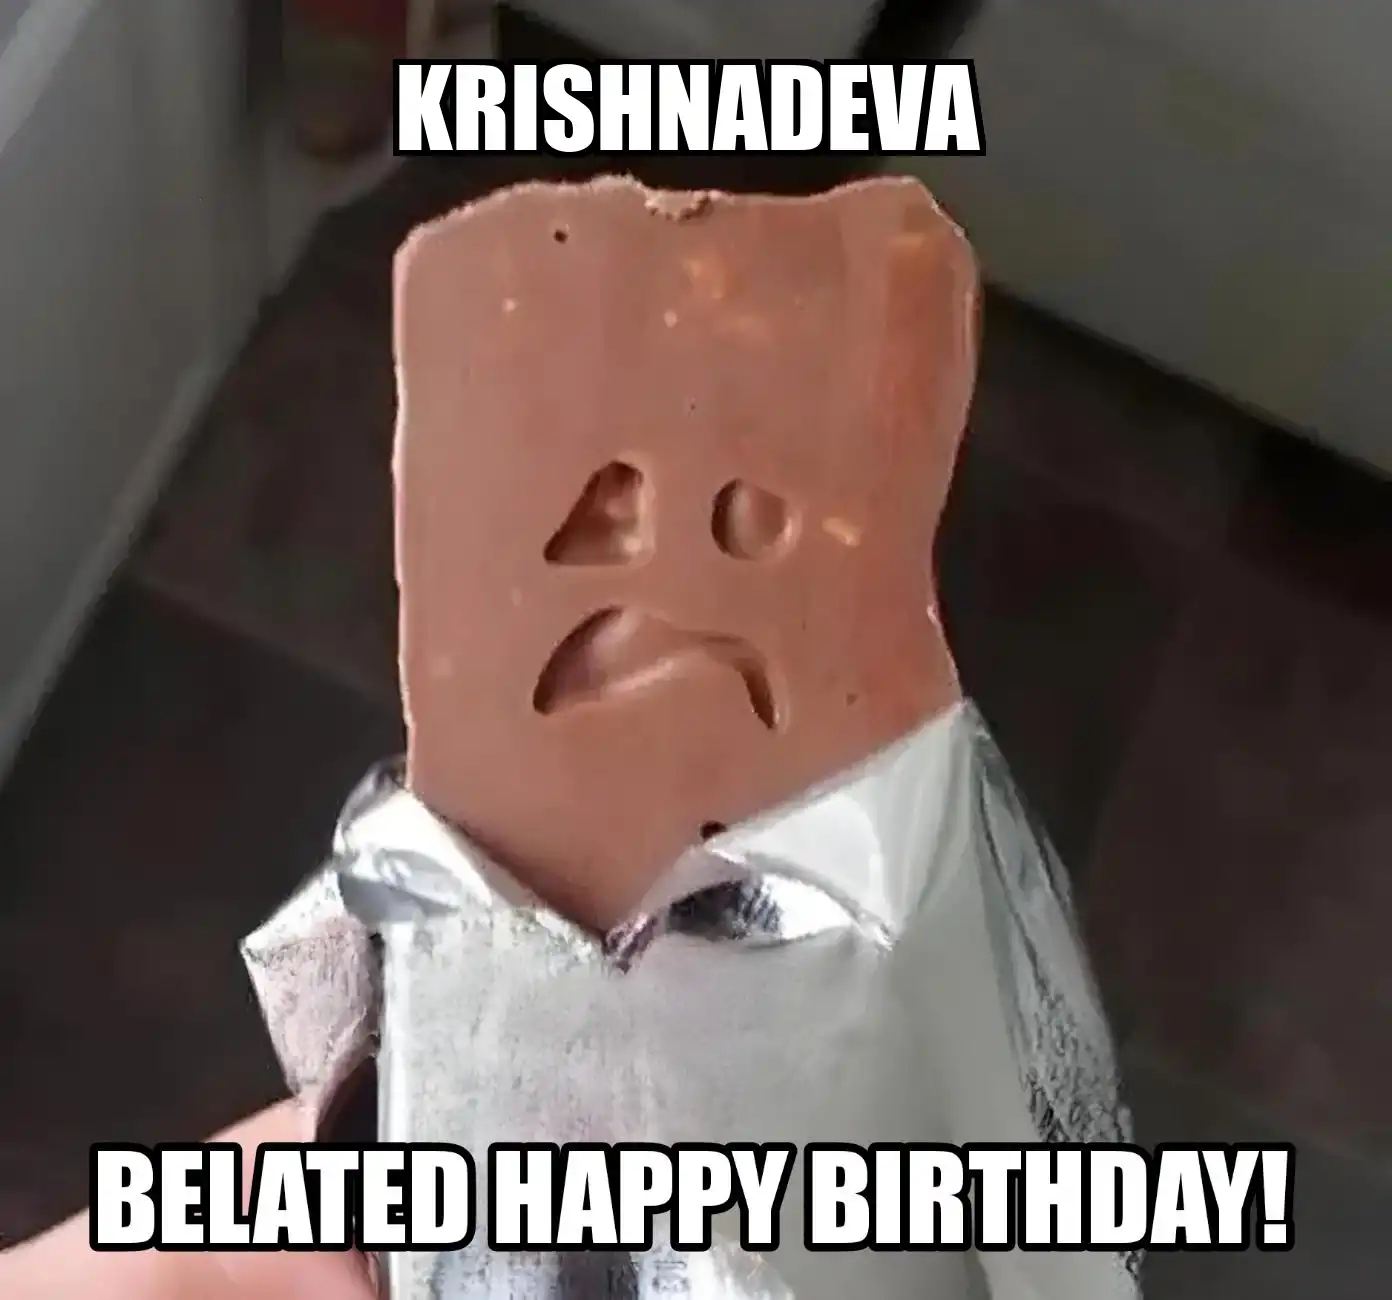 Happy Birthday Krishnadeva Belated Happy Birthday Meme